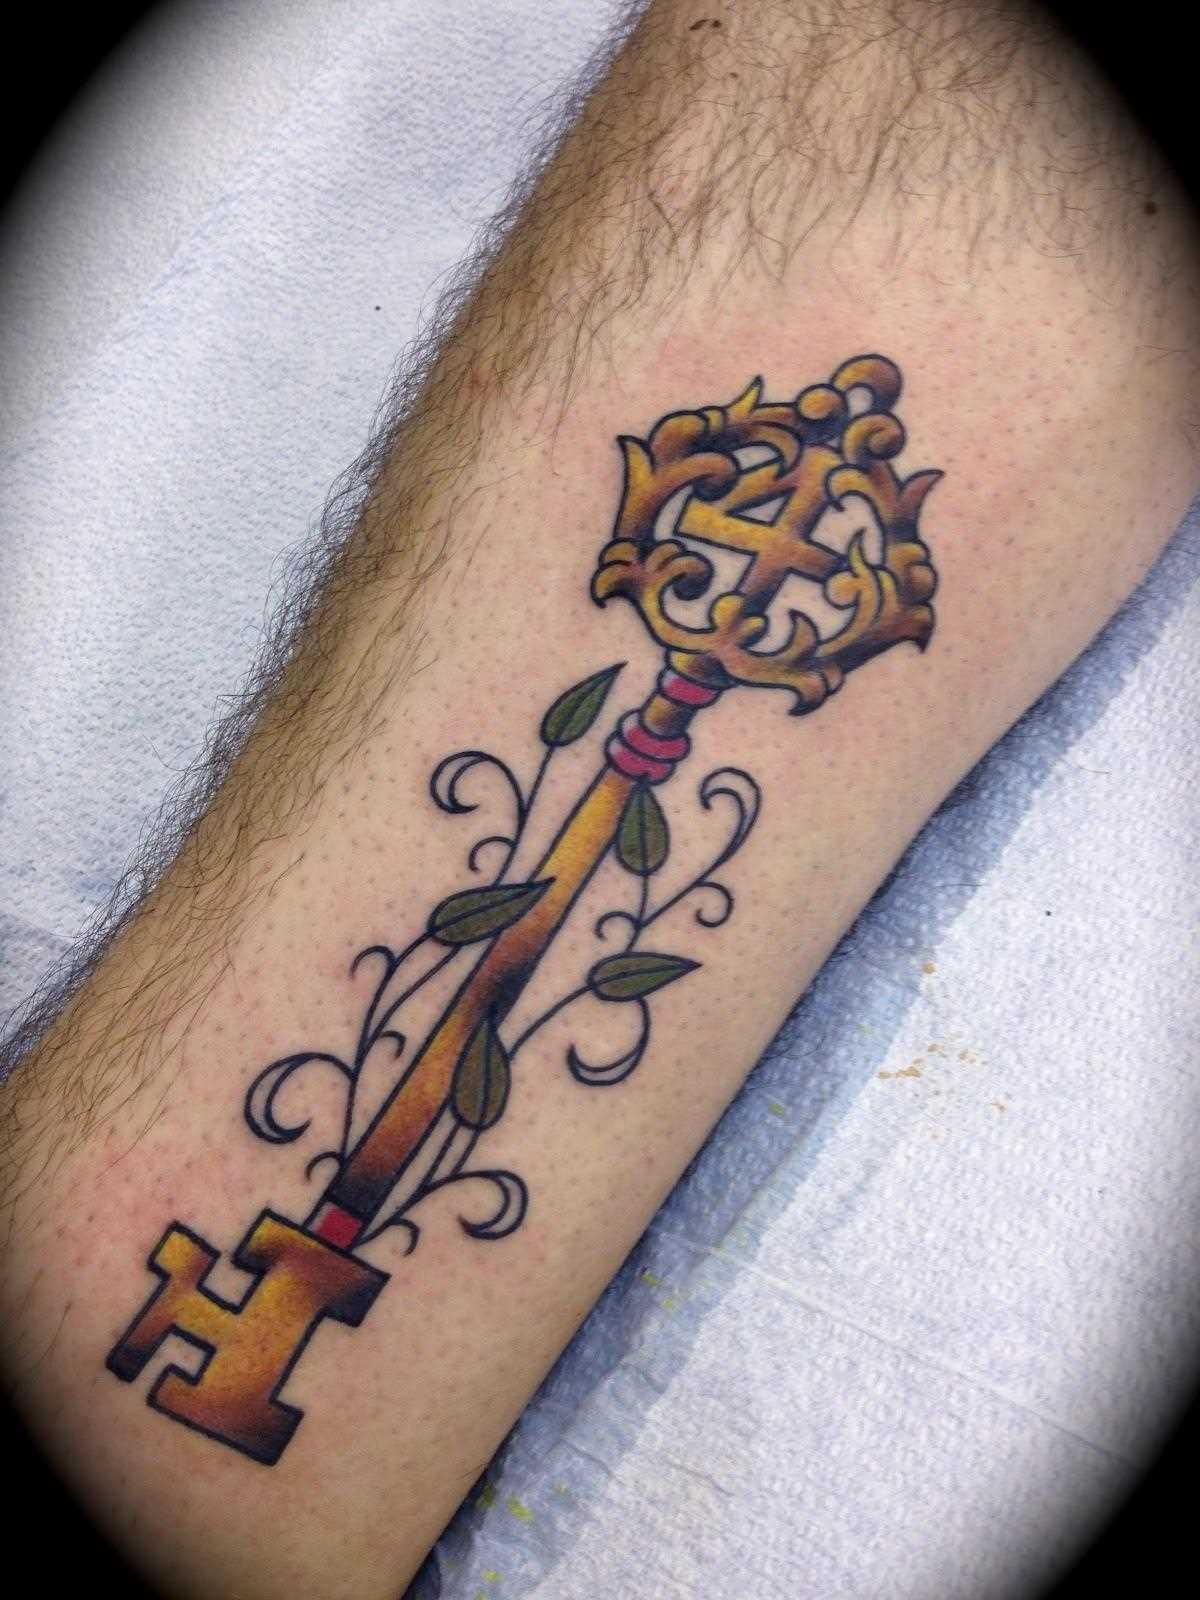 Tatuagem na perna de um cara - chave